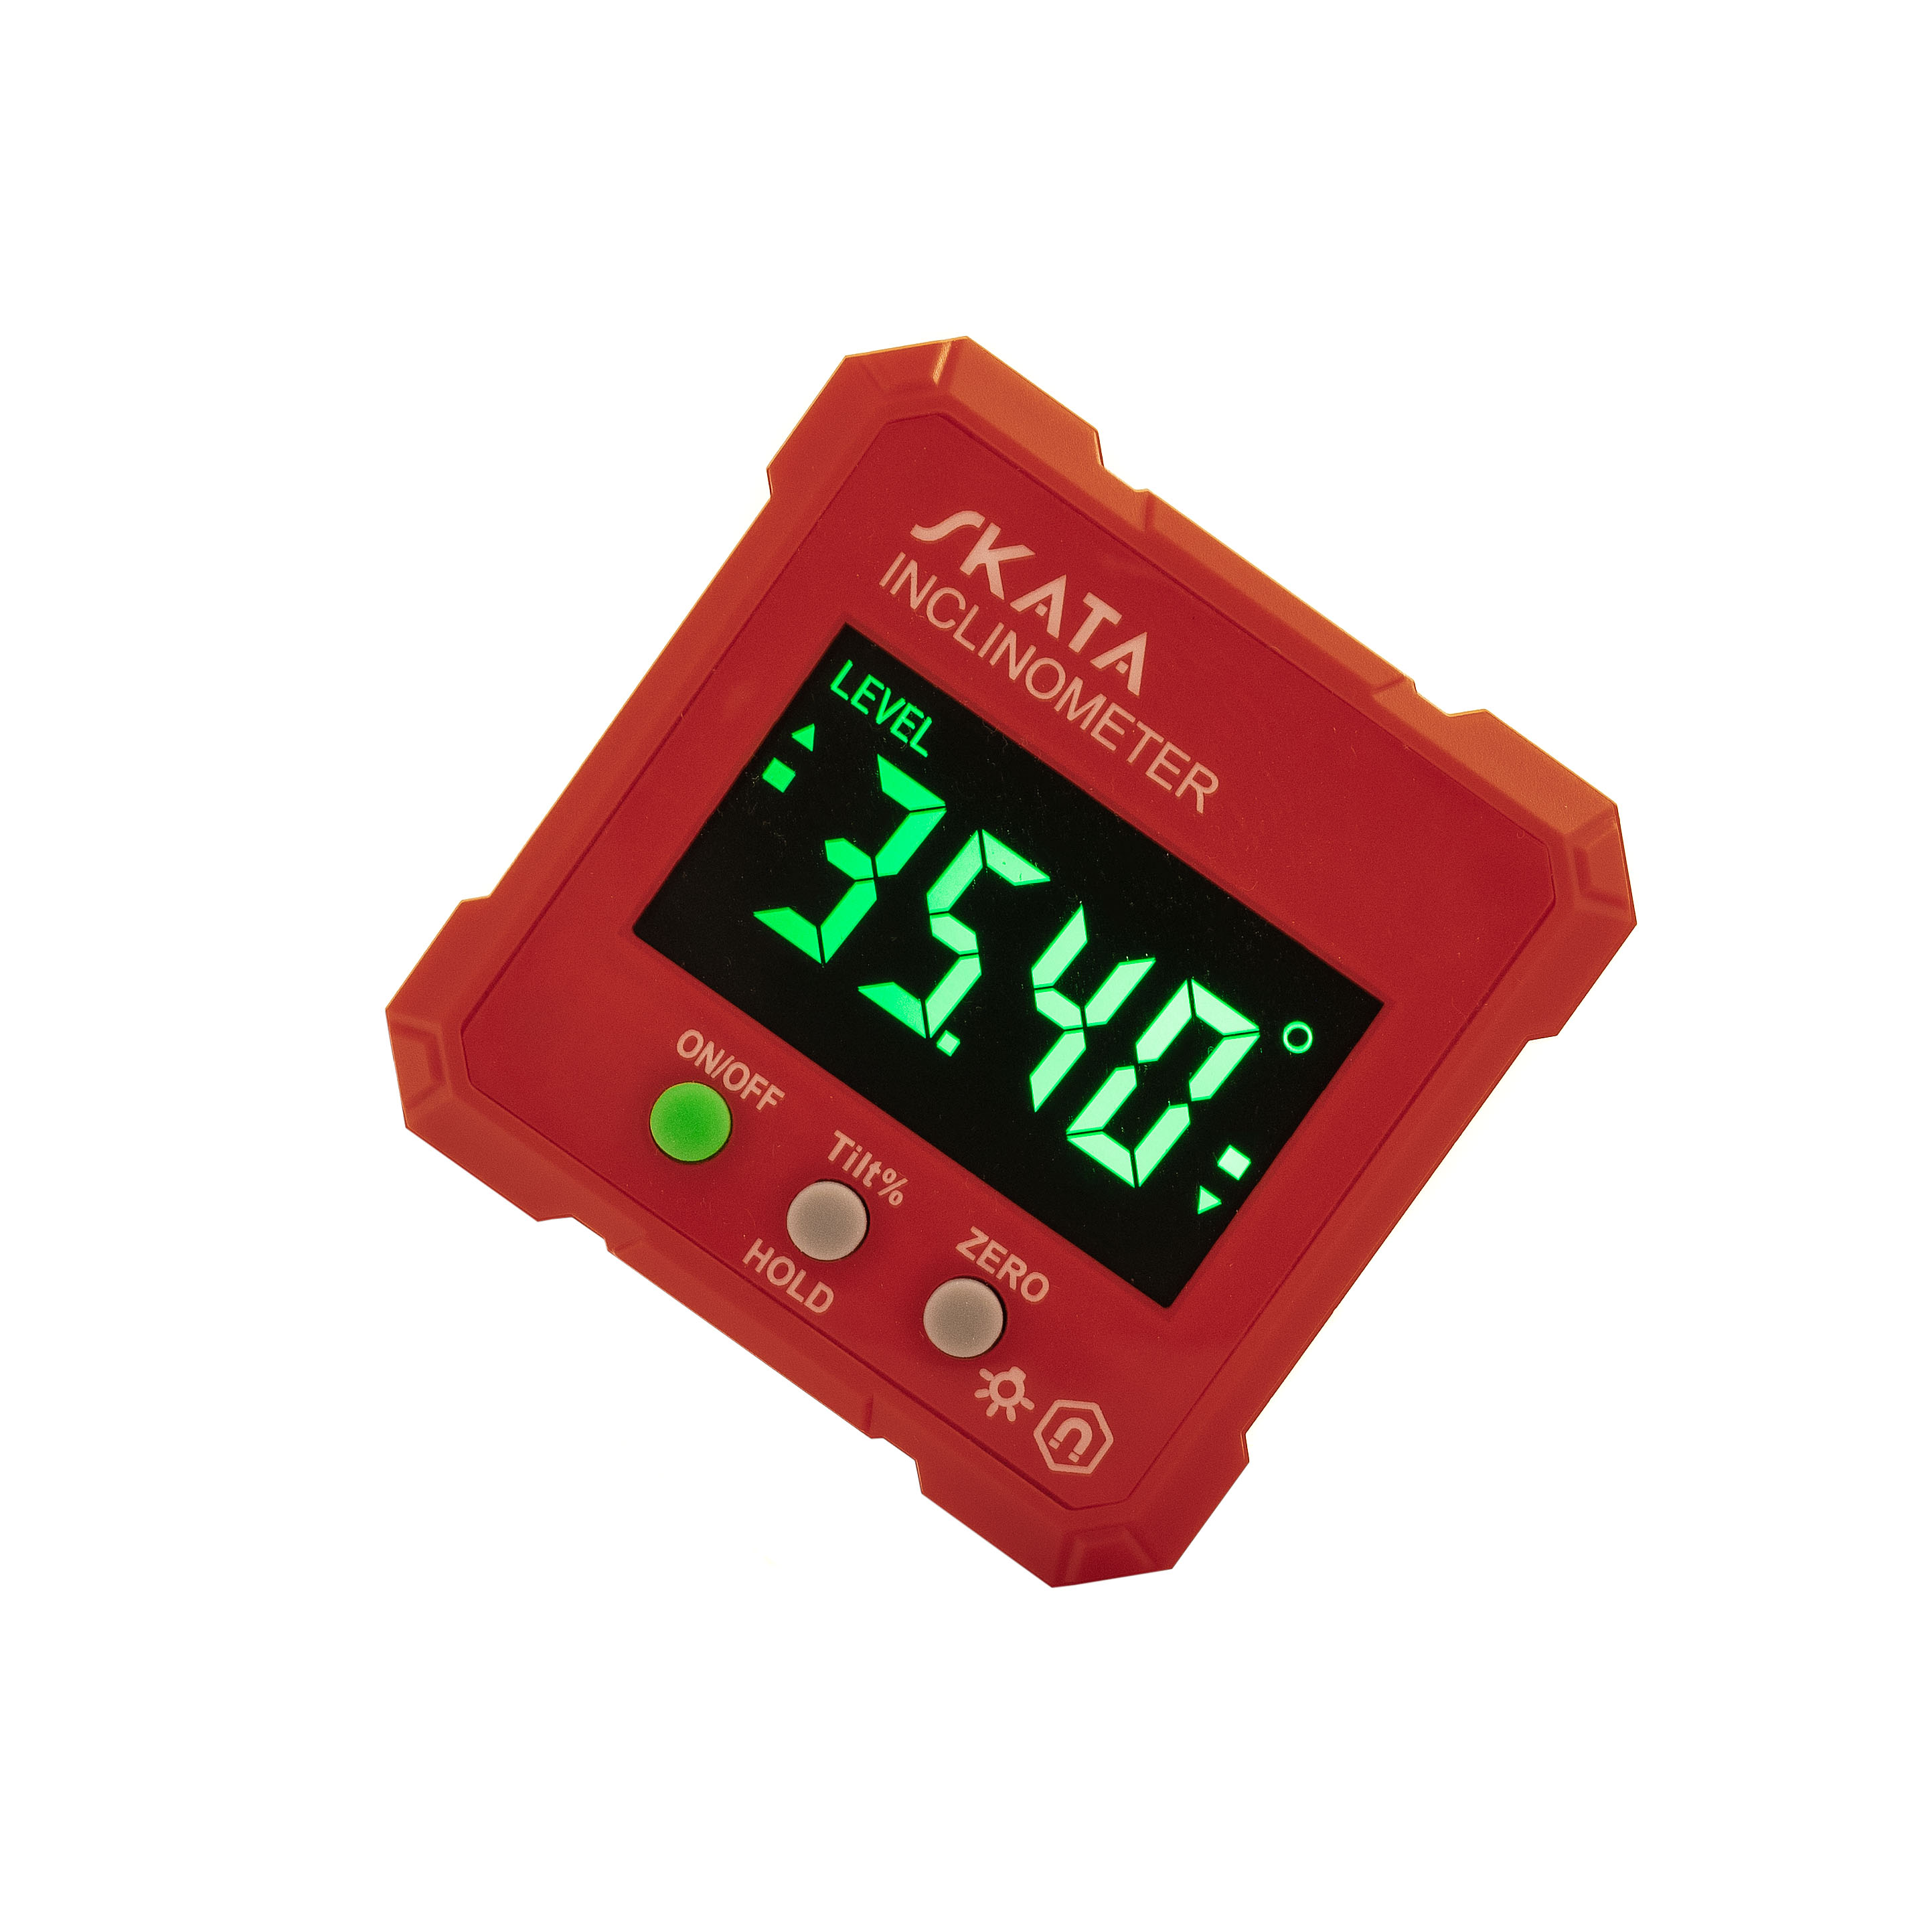 Угломер электронный с магнитным основанием, SKATA Inclinometer угломер электронный портативный с магнитным основанием